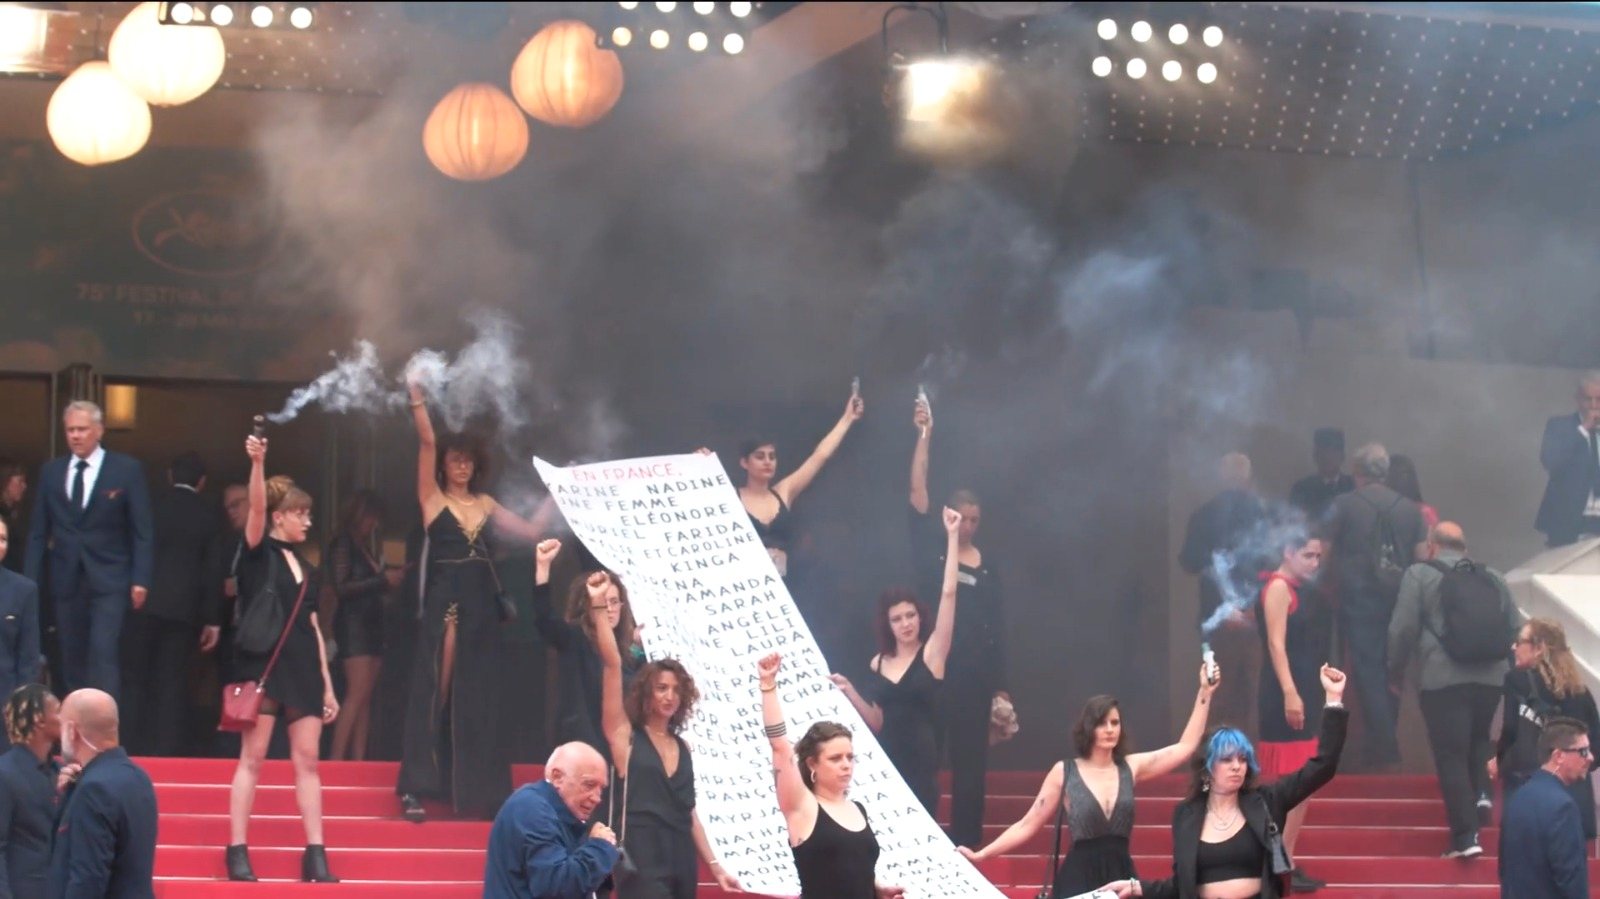 Ao parar nas escadas em frente ao Palais des Festivals, o grupo feminista Les Colleuses detonou granadas de fumo preto